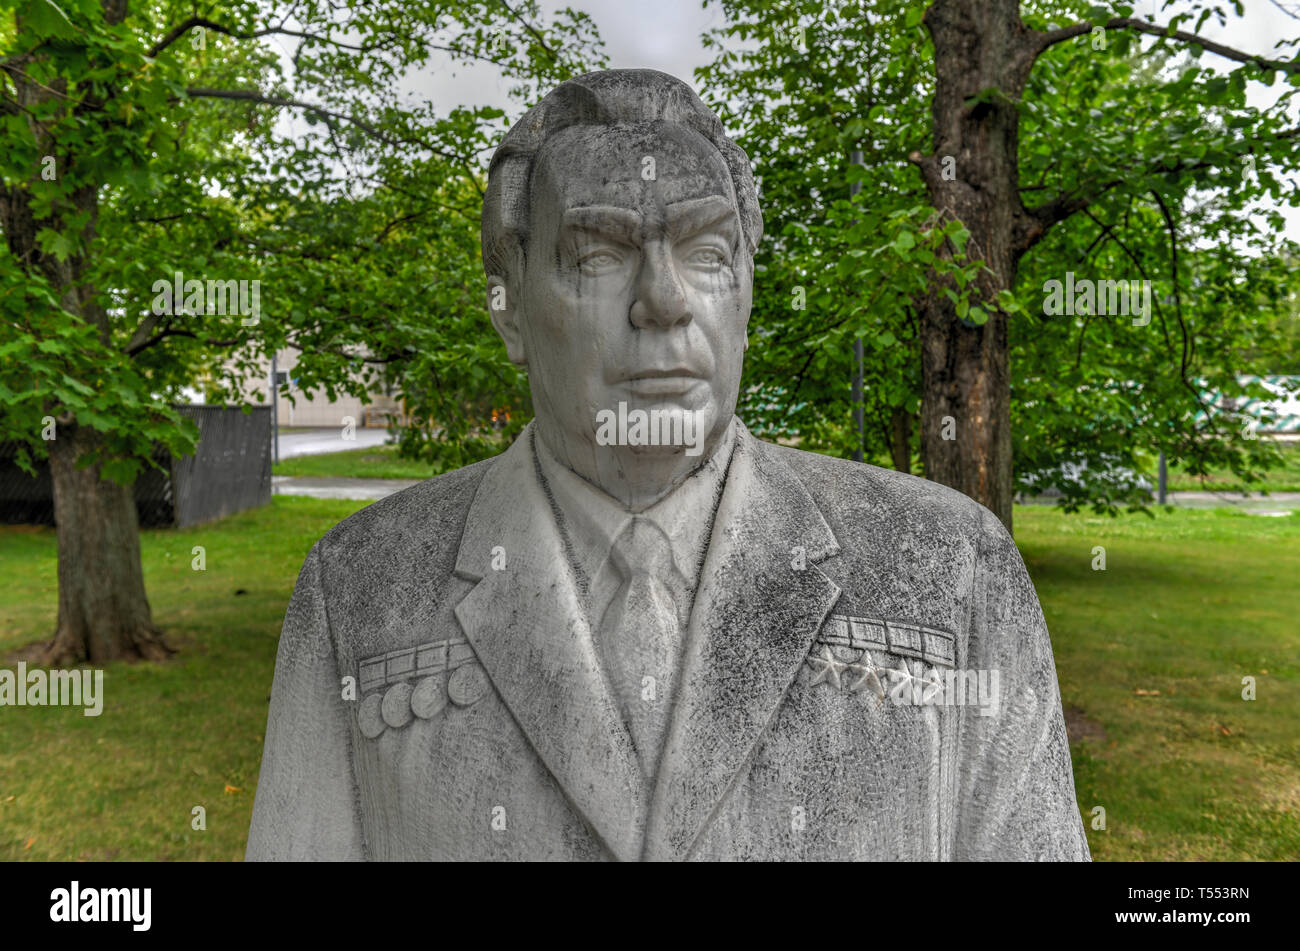 Moskau, Russland - Juli 18, 2018: Skulptur von Breschnew in der gefallenen Monument Park, Moskau, Russland. Stockfoto